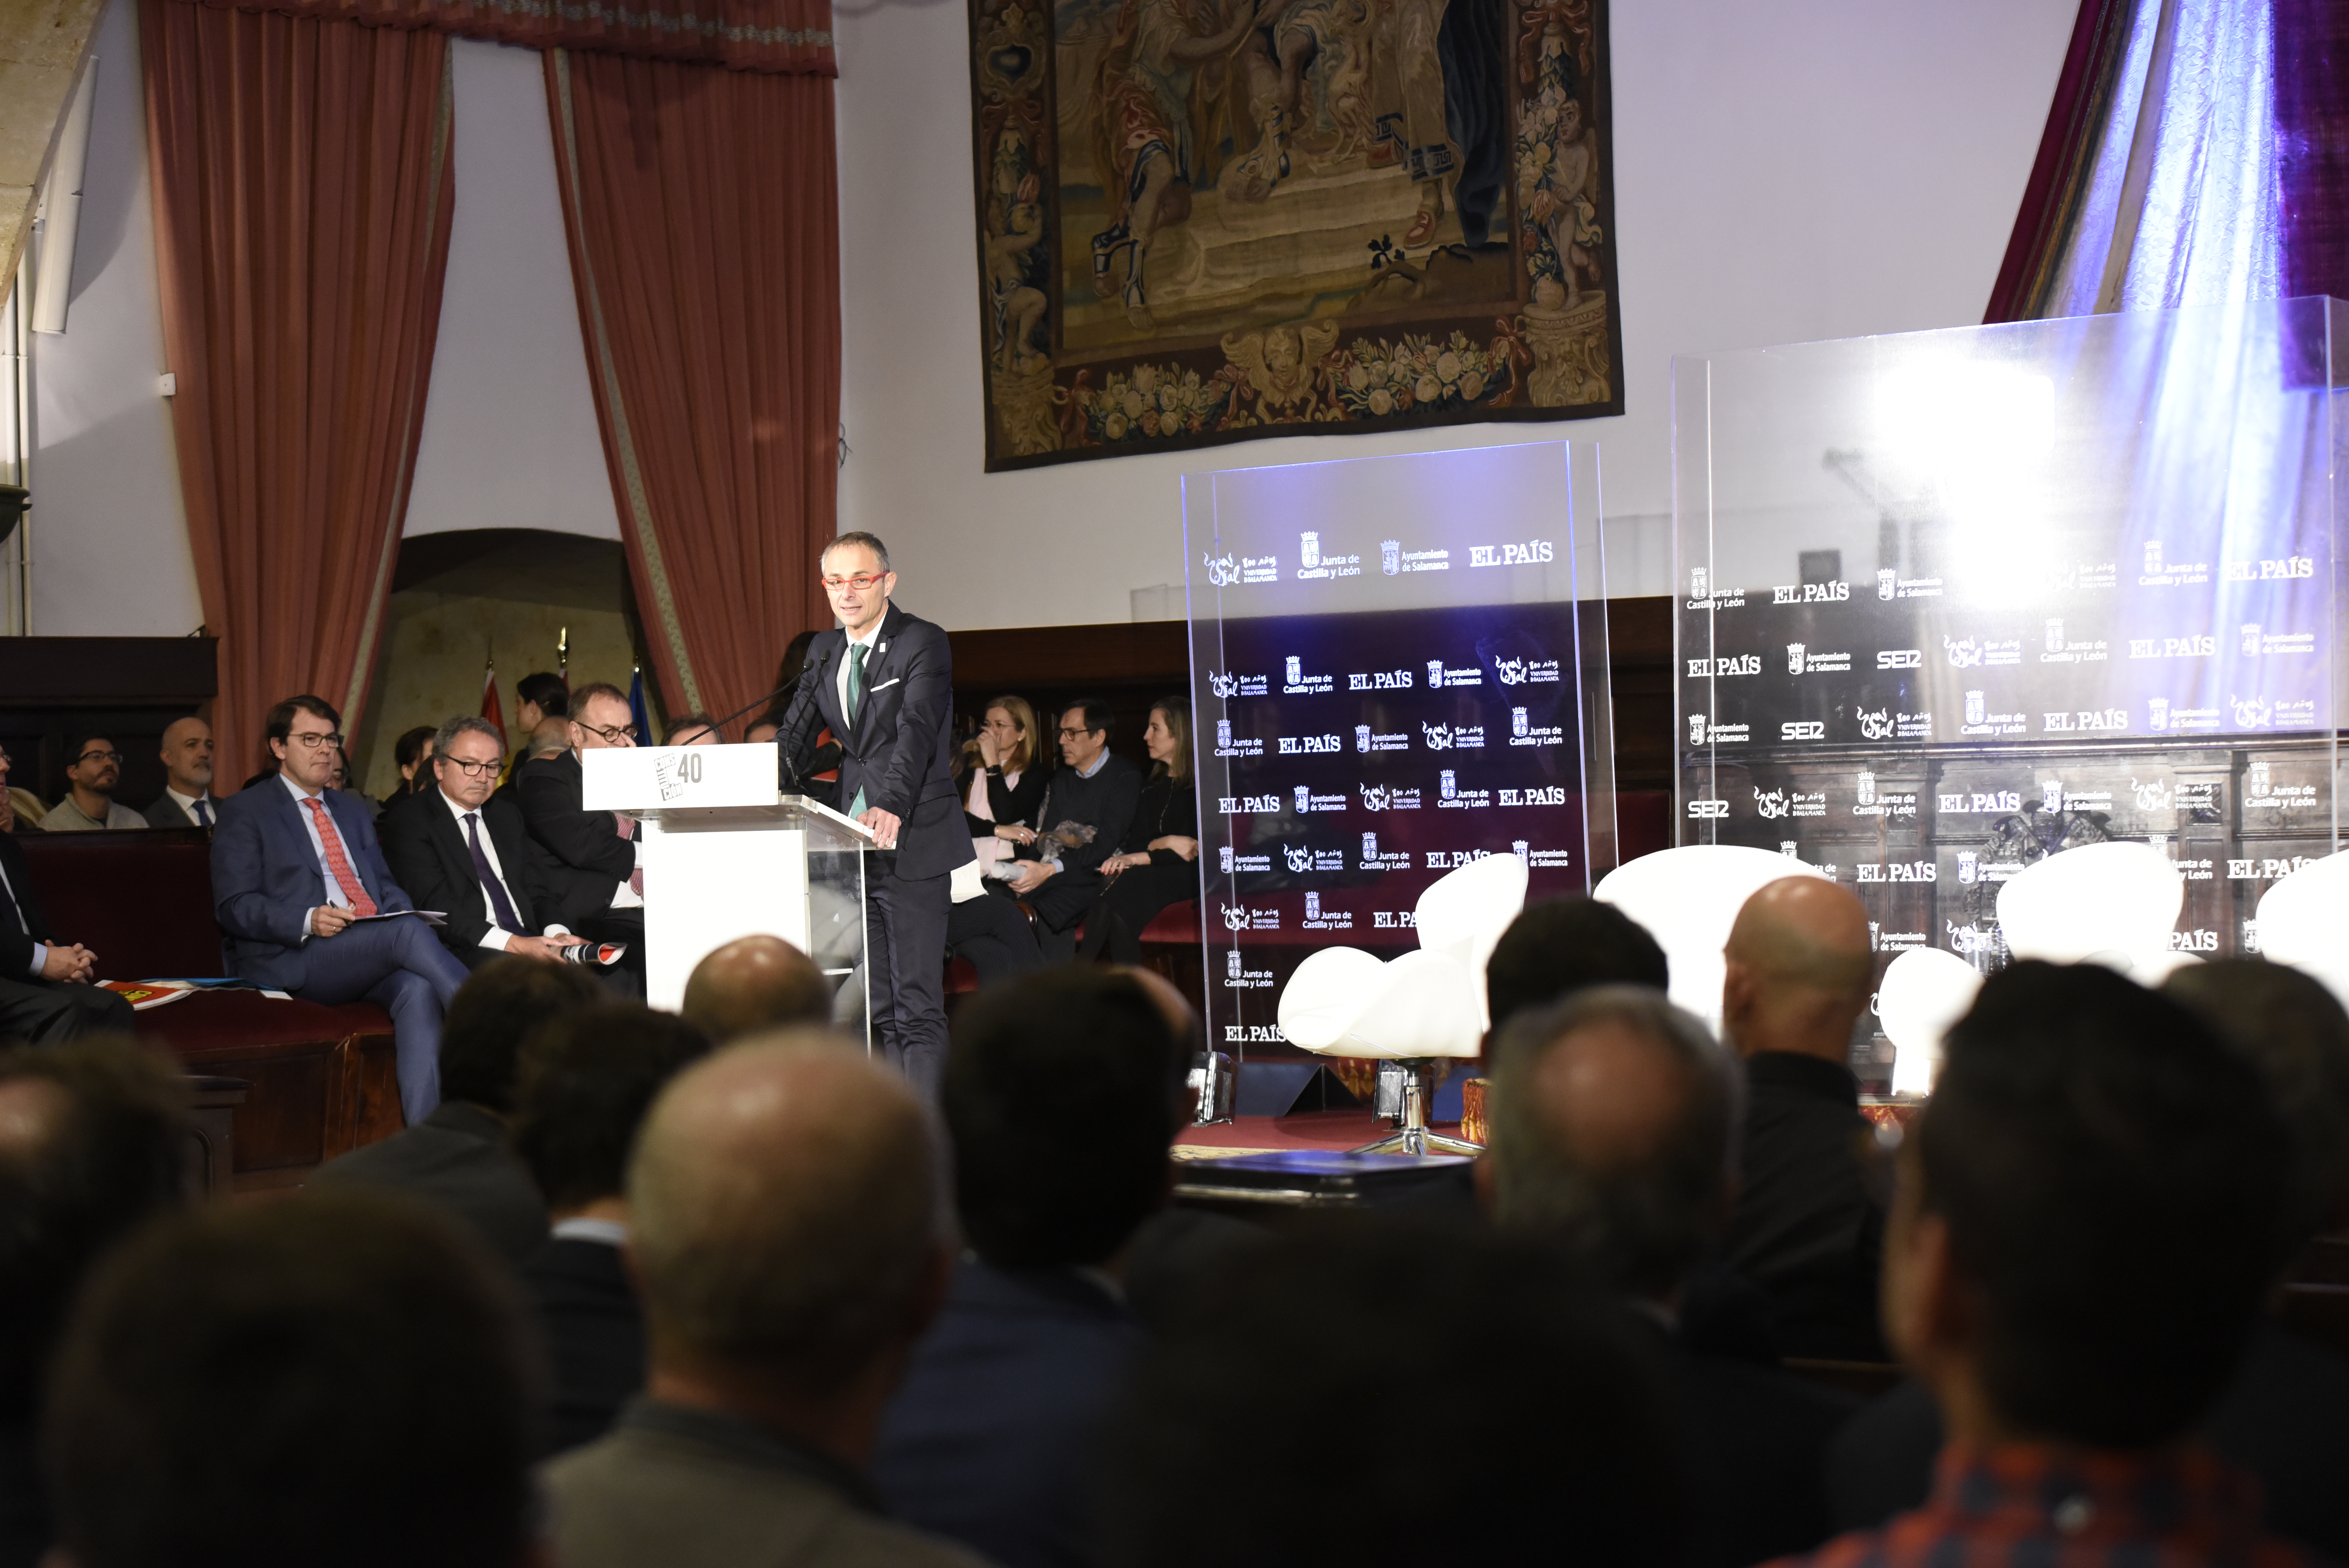 La Universidad de Salamanca acoge el debate sobre la Constitución coincidiendo con su 40 aniversario